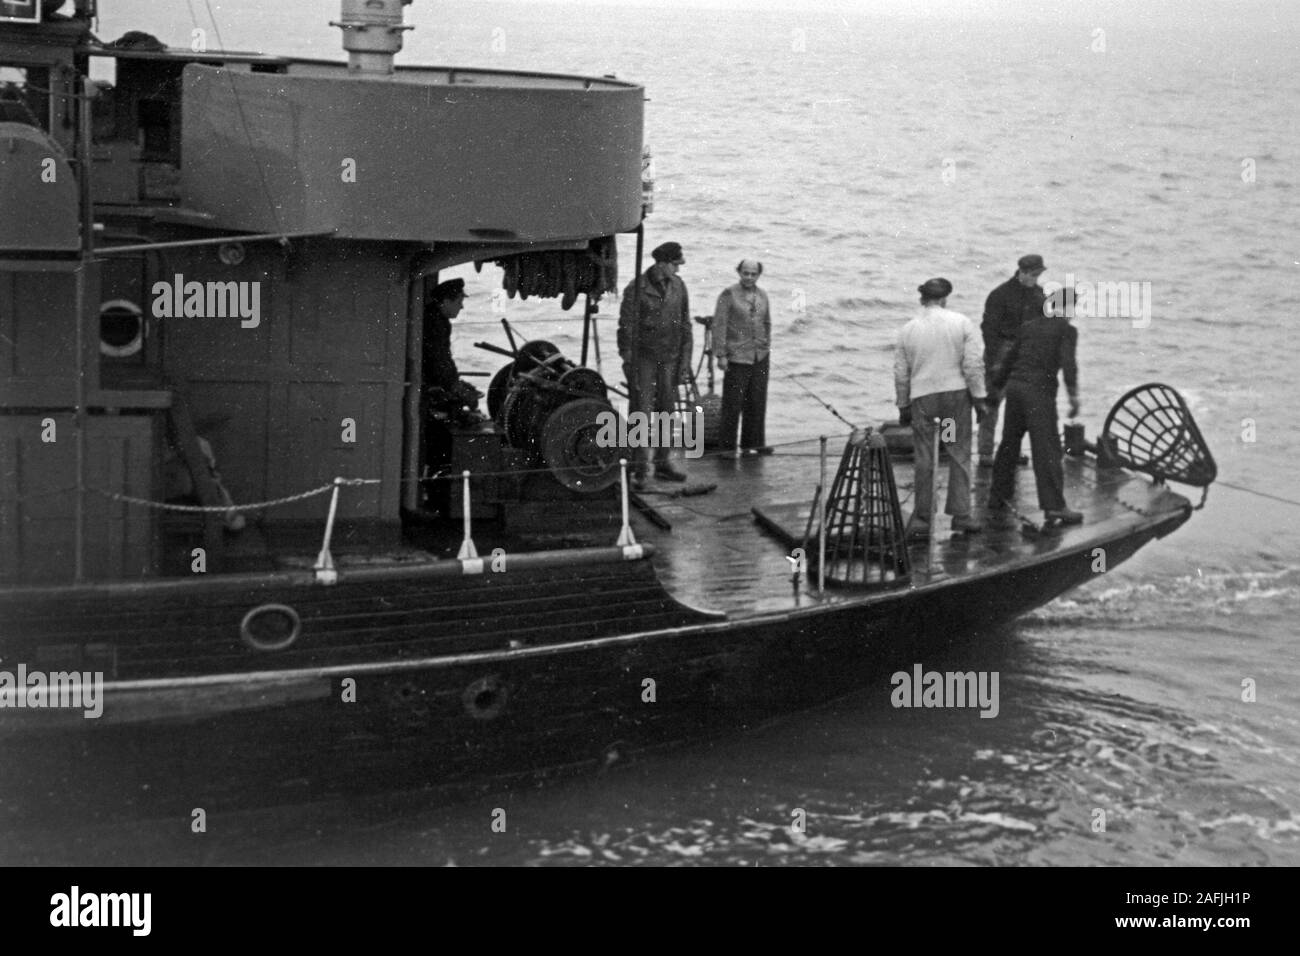 Arbeiter auf einem arrastrero im Hafen von Emden, Niedersachsen, Deutschland 1950. Los trabajadores de un buque en el puerto de Emden, Baja Sajonia, Alemania 1950. Foto de stock